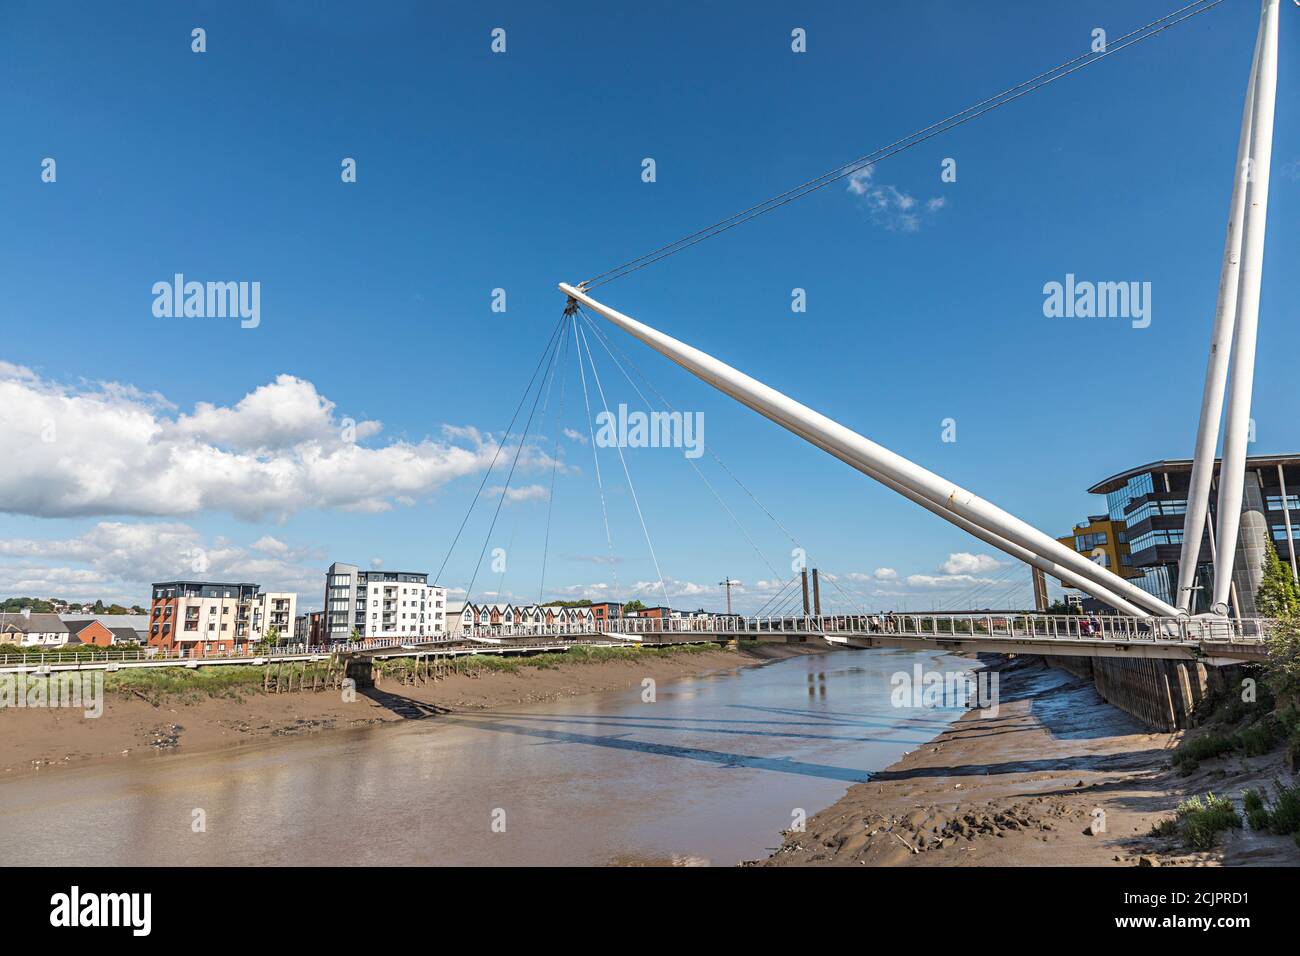 Construction de ponts et de logements au bord de la rivière avec la rivière marémotrice, Newport, pays de Galles, Royaume-Uni Banque D'Images